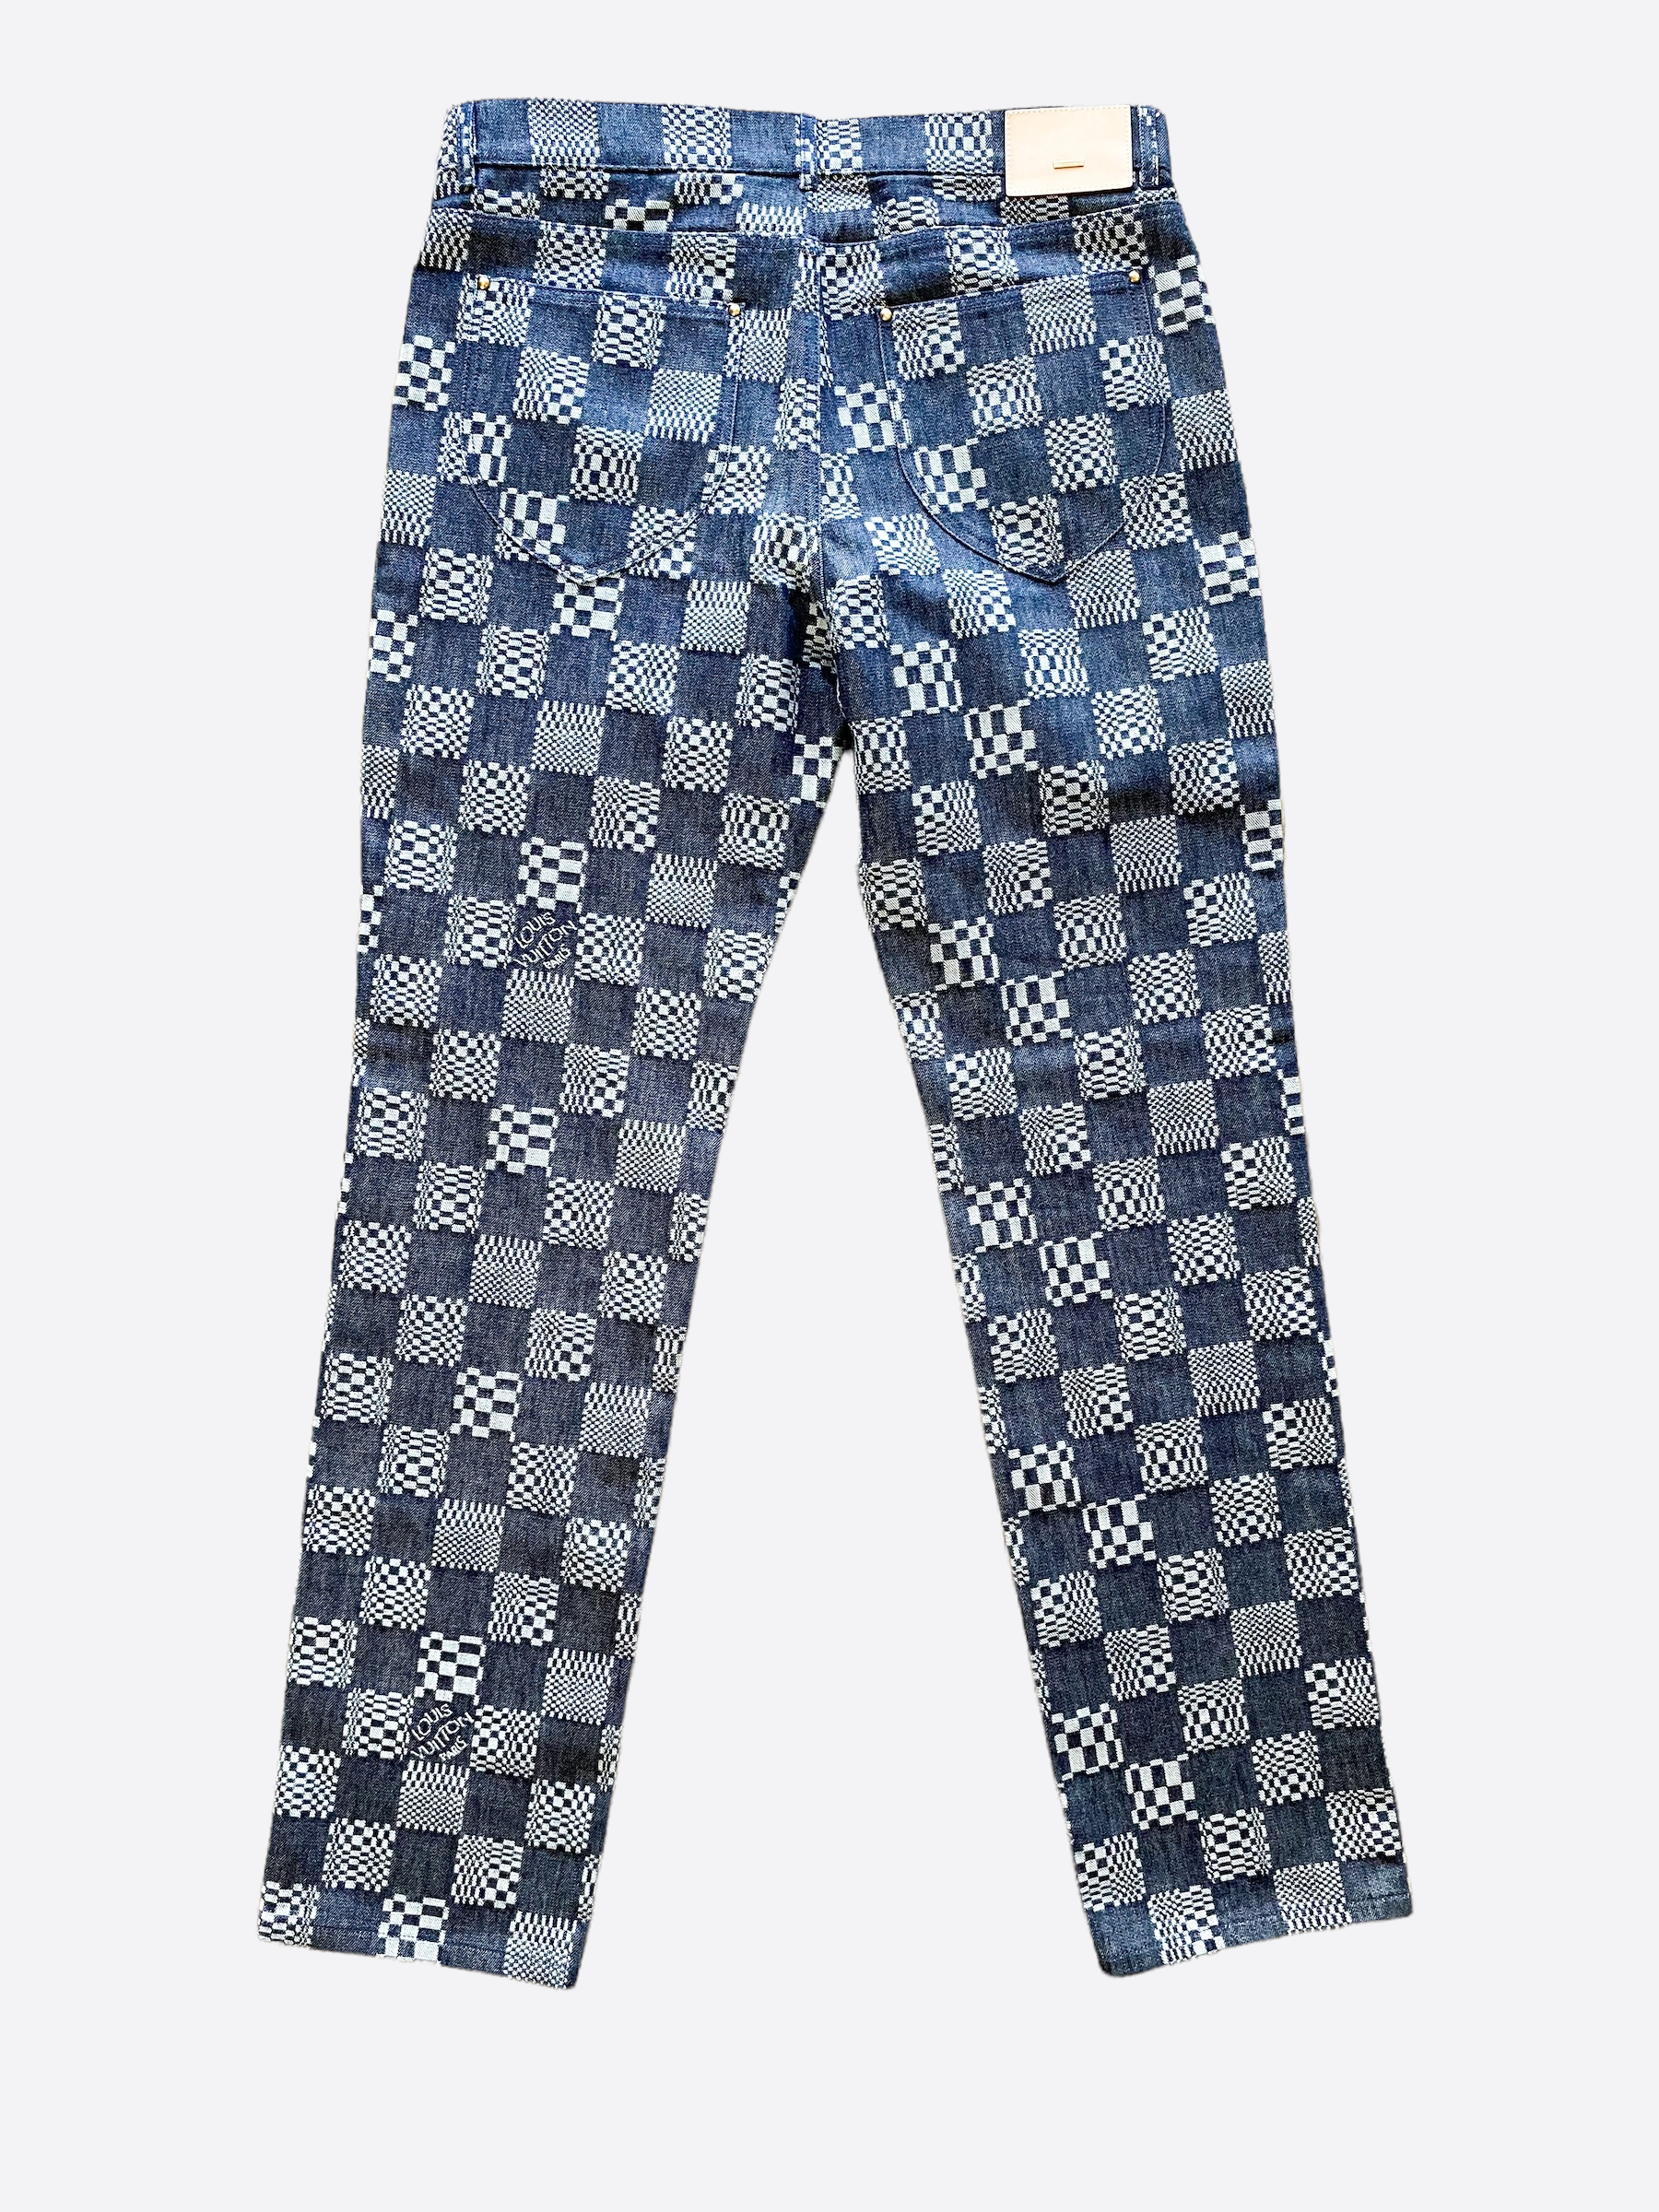 Louis Vuitton Pajamas for Women -  Canada